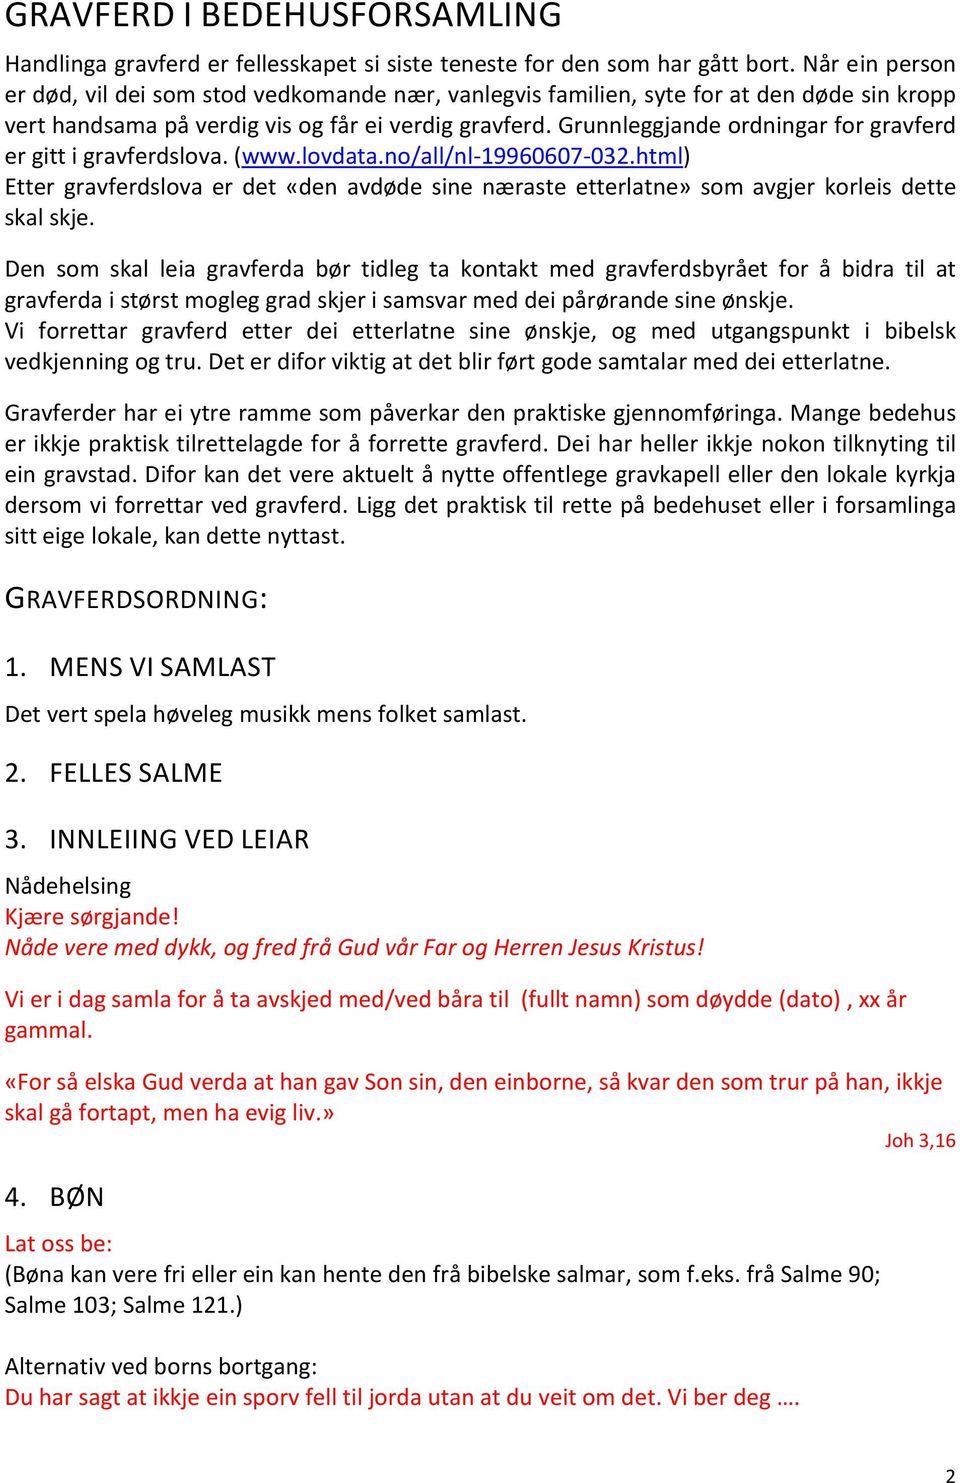 Grunnleggjande ordningar for gravferd er gitt i gravferdslova. (www.lovdata.no/all/nl-19960607-032.